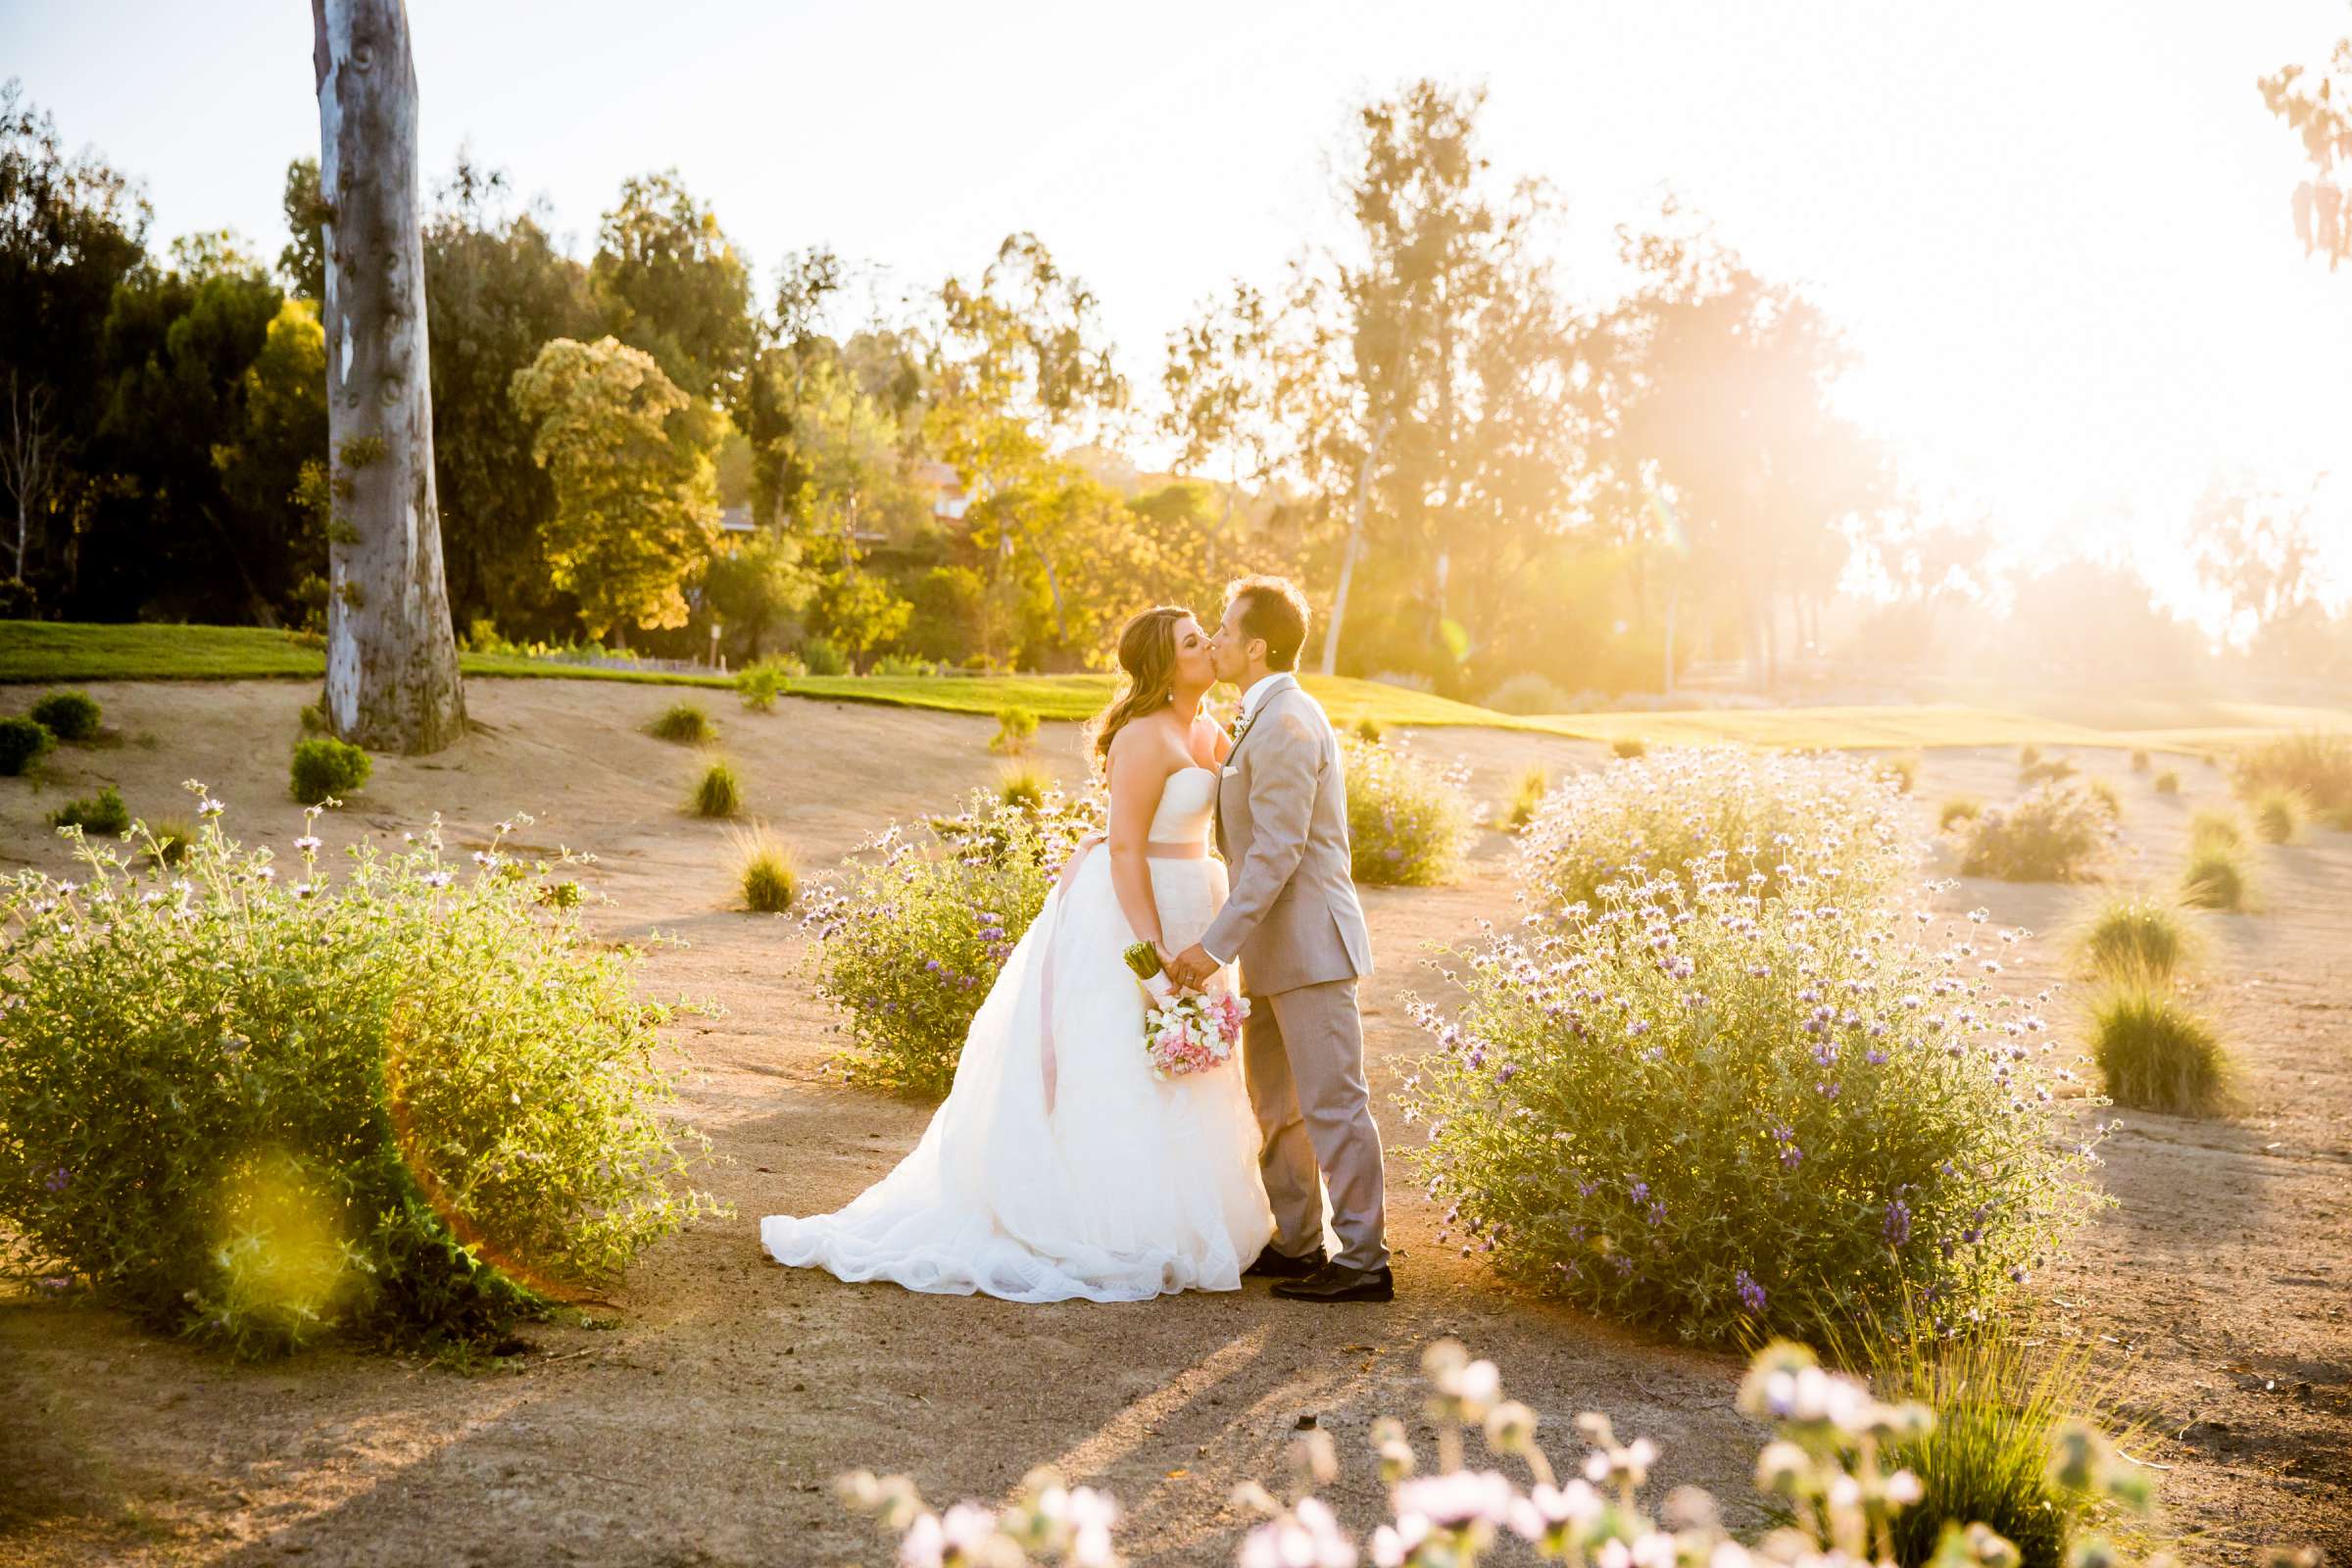 Rancho Santa Fe Golf Club Wedding coordinated by Monarch Weddings, Carolynn and Jon Wedding Photo #27 by True Photography